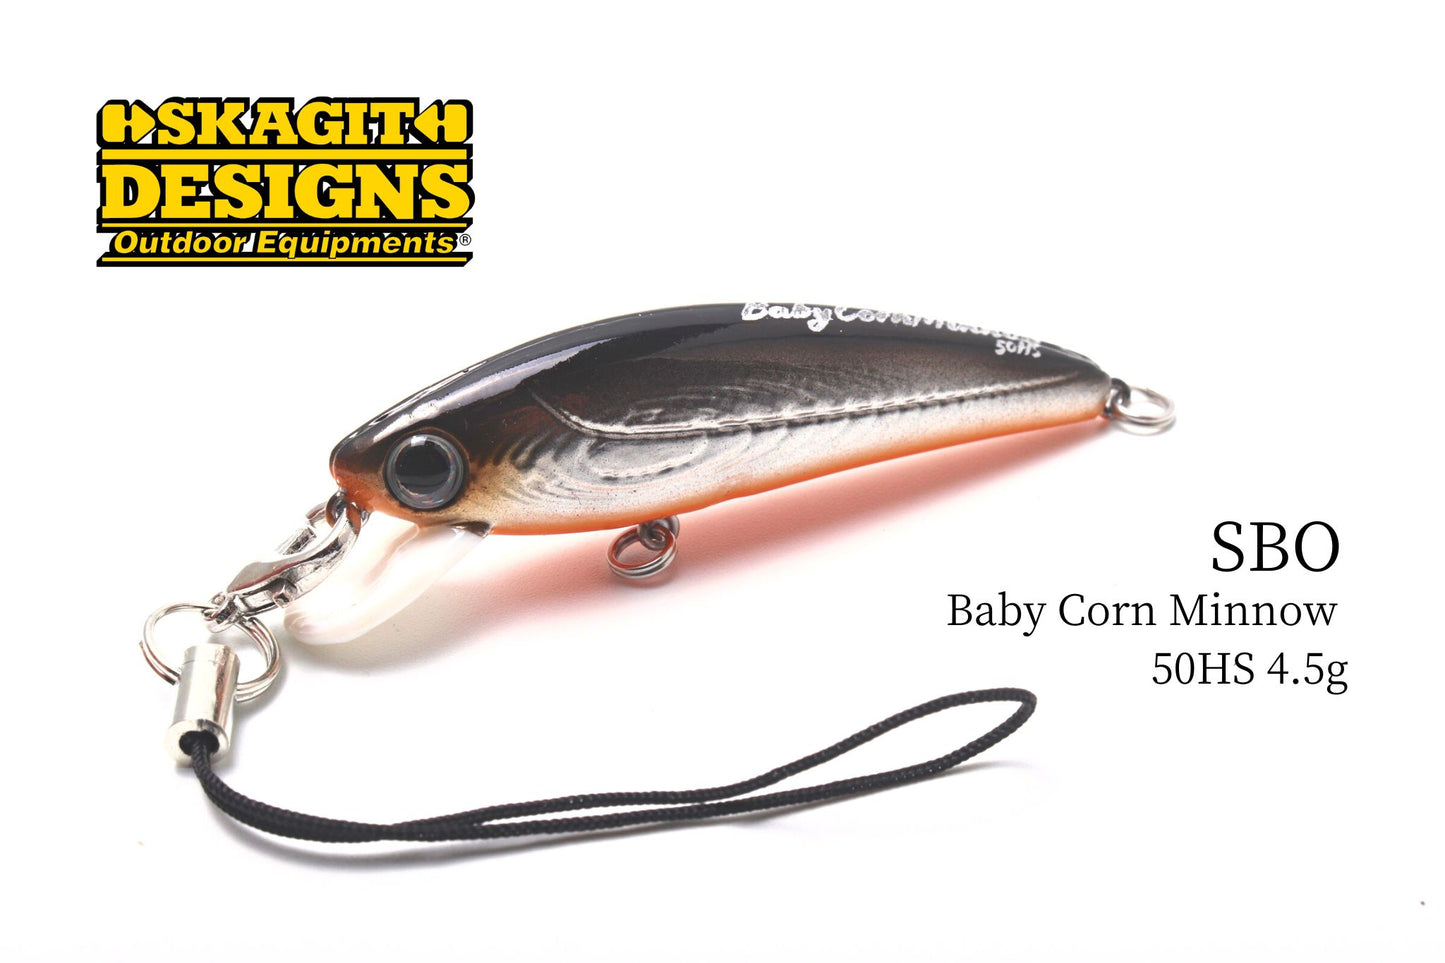 Baby Corn Minnow 50HS 4.5g